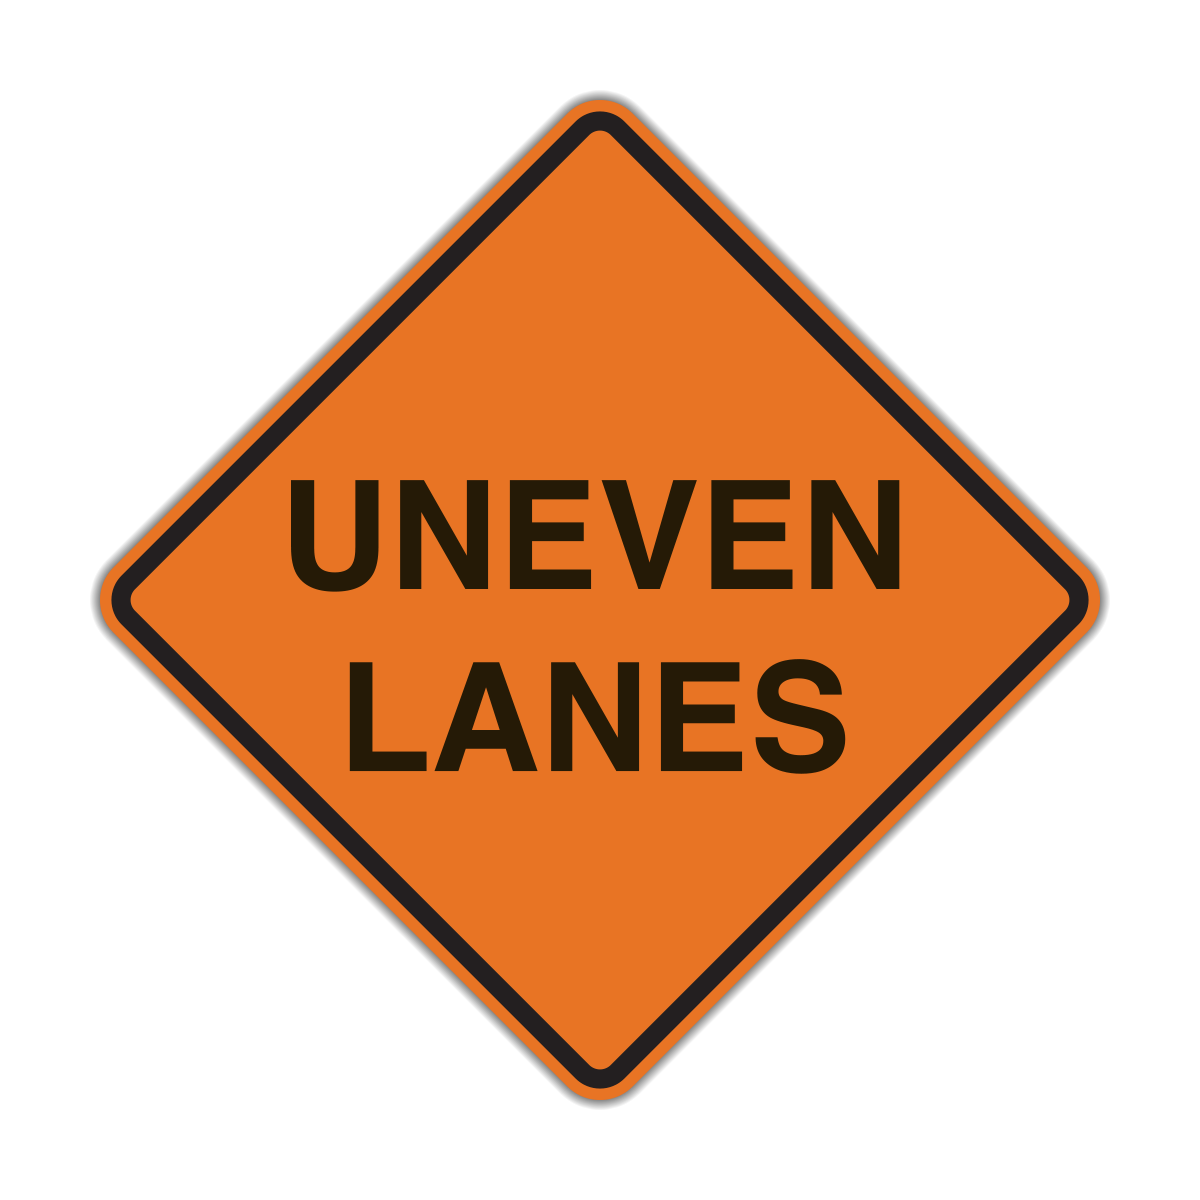 W8-11 Uneven Lanes (Construction)